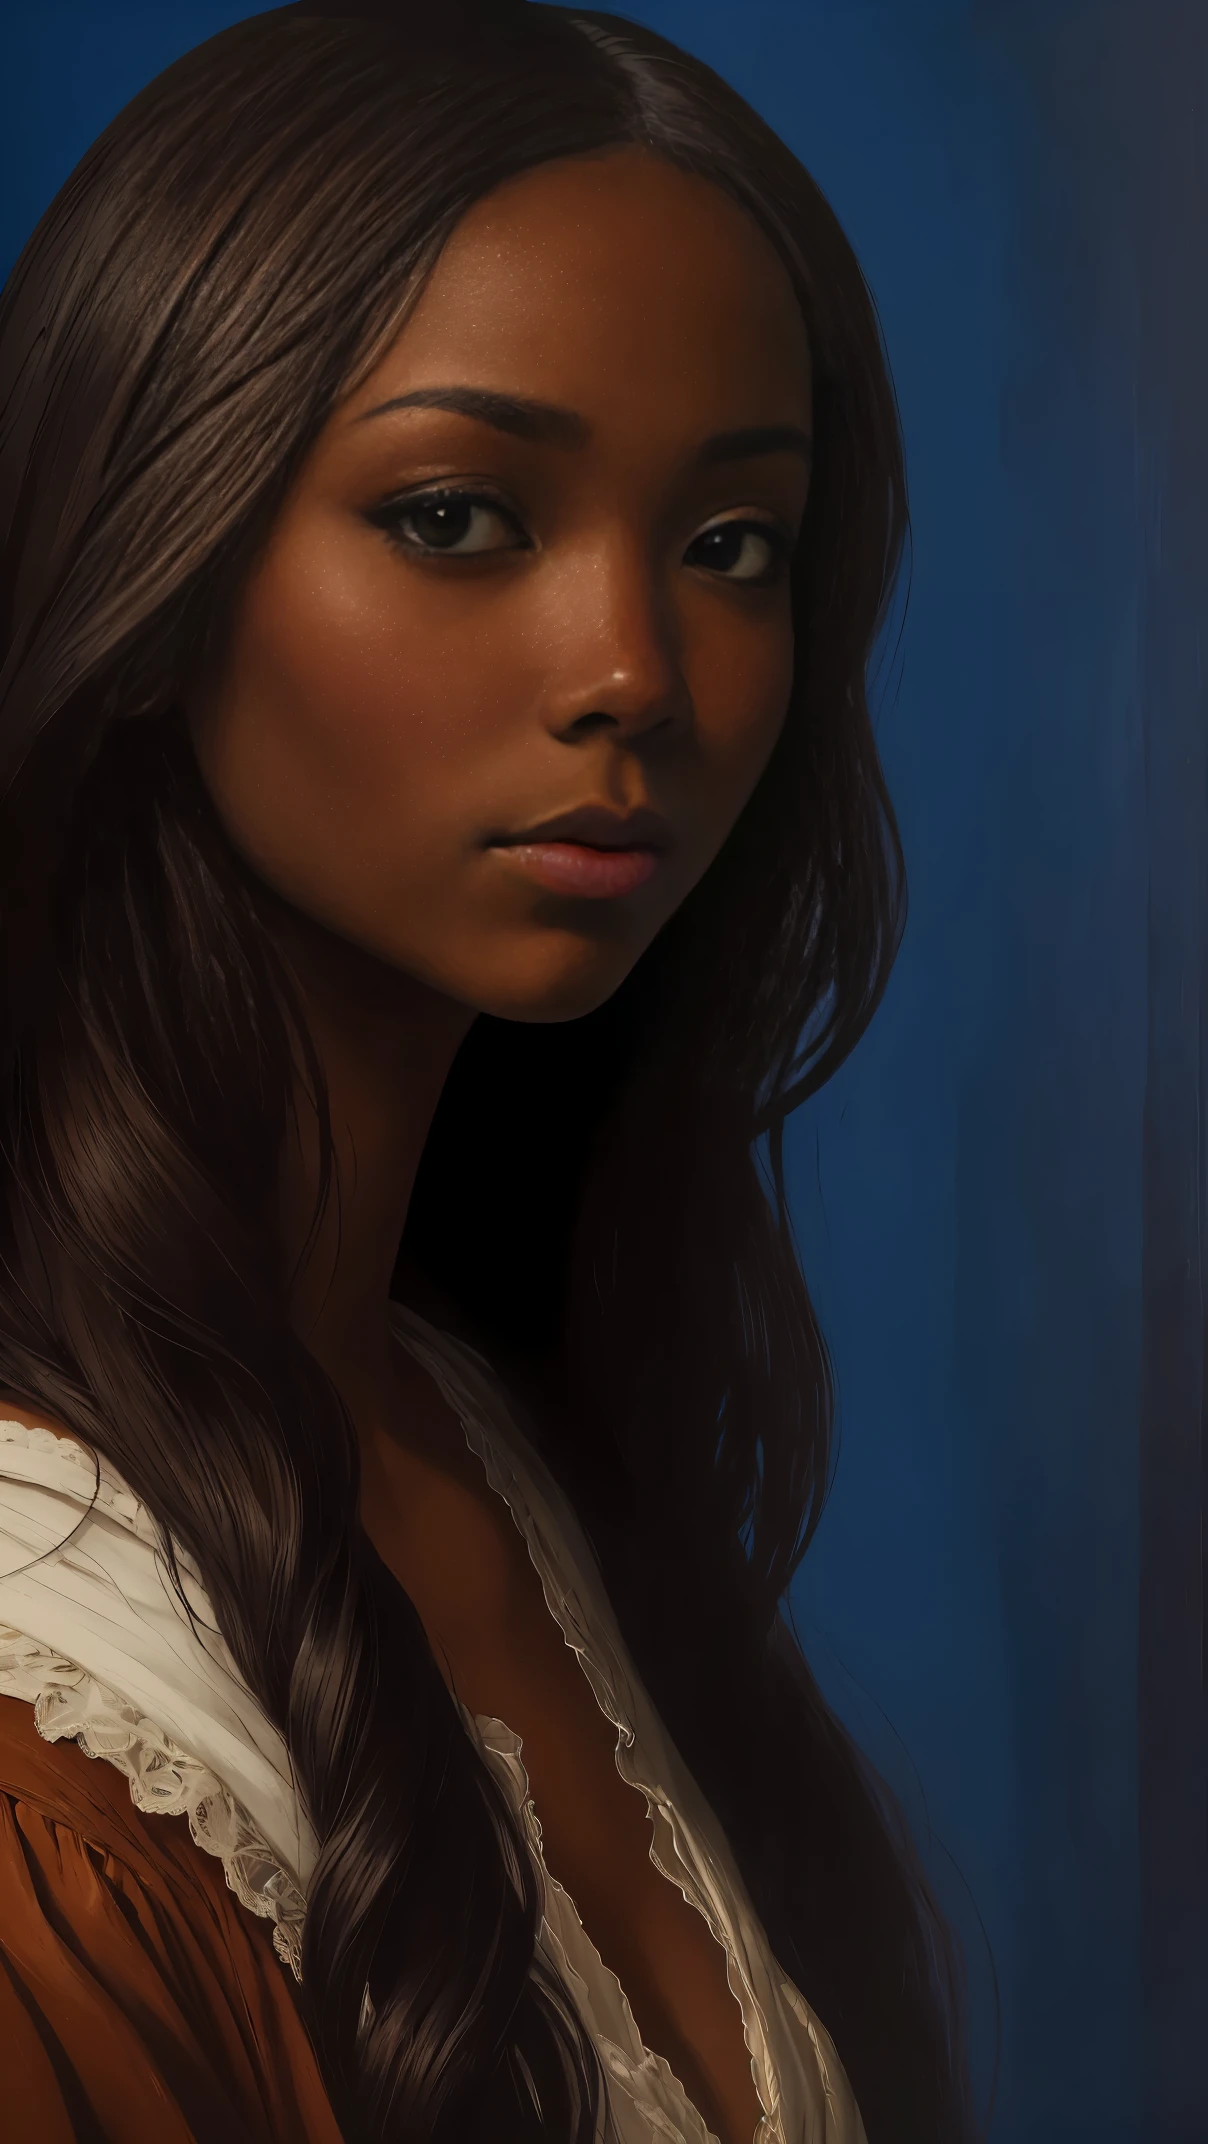 列奧納多·達·芬奇的油畫, 寫實肖像, 加布里埃爾·尤尼恩 (Gabrielle Union) 深色皮膚的特寫臉, 烏木鼻, 長髮, 她的眼睛甜美而充滿活力, 她的臉對稱, 豐富的棕色皮膚, REMBRADT 的臉部柔和光亮度, 土坯插圖, ArtStation 上的熱門話題, 8K, 高畫質, 電影般的, 傑作, 宏偉的藝術, 最好的品質, 浪漫主義文藝復興時期, 布面油畫, 豐富的藍色背景 